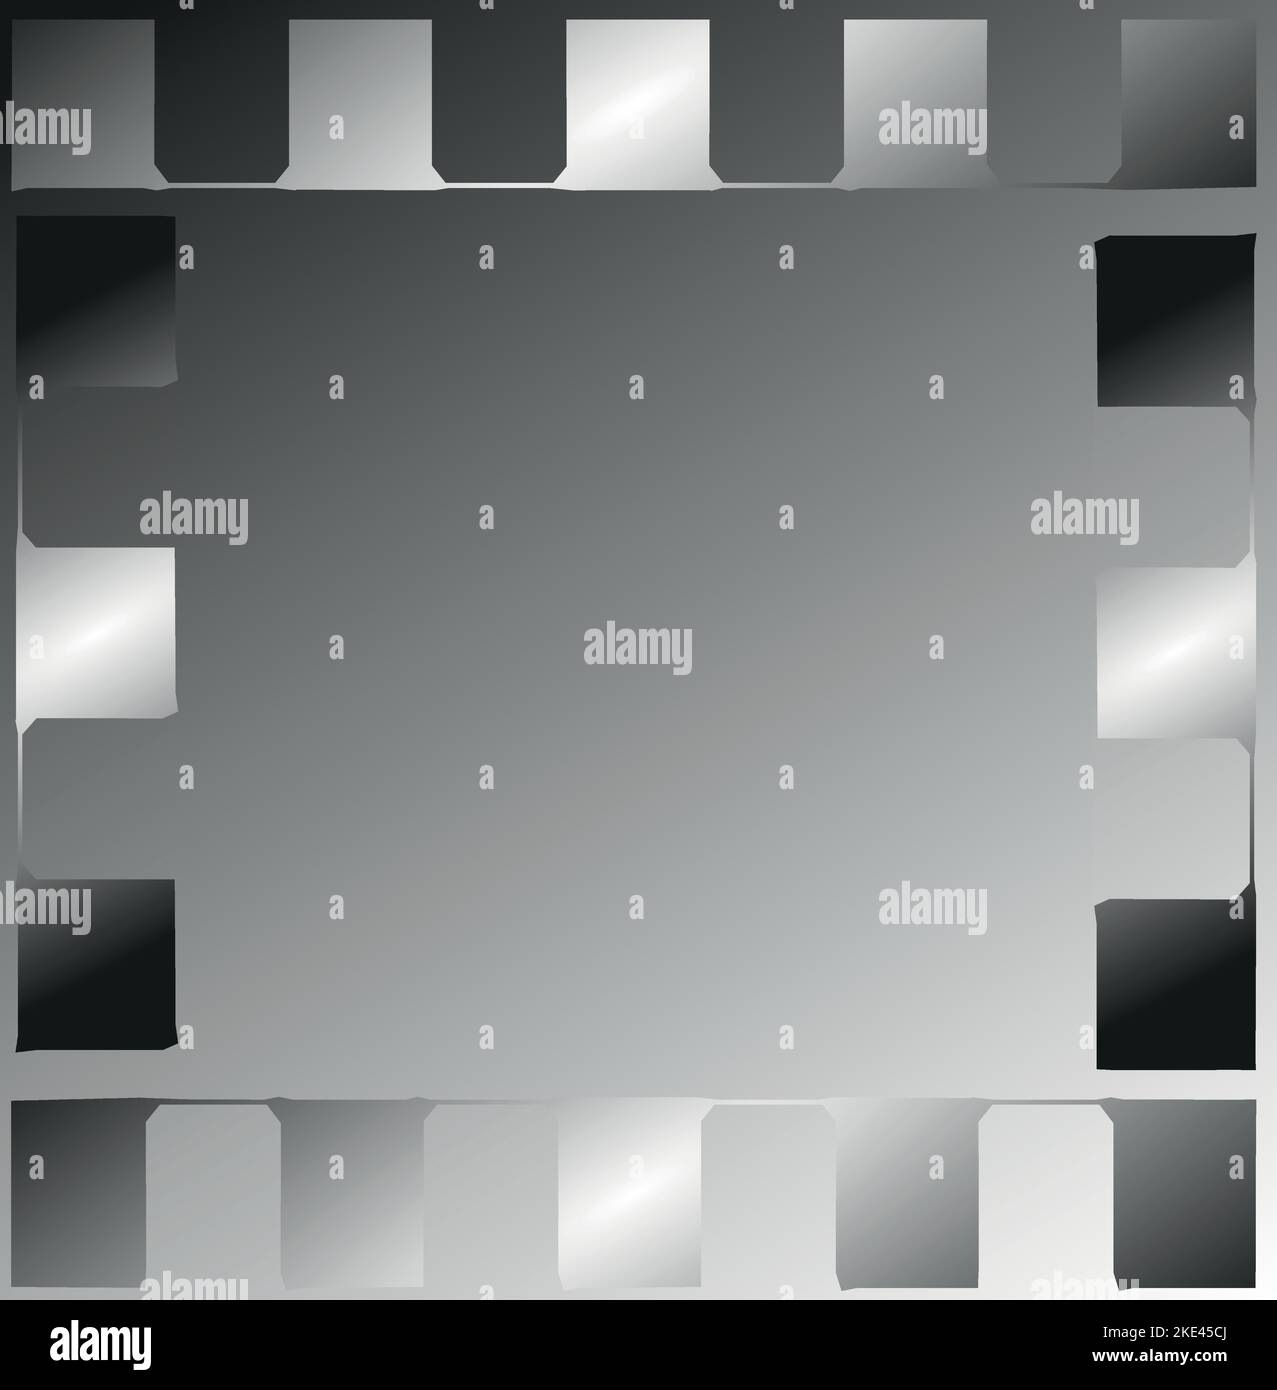 Abstrakter Rahmen aus fotografischen Streifen. Schatten von schwarz-weißem Grafikdesign, zeitgenössisches künstlerisches Design. Speicherplatz kopieren. Stock Vektor